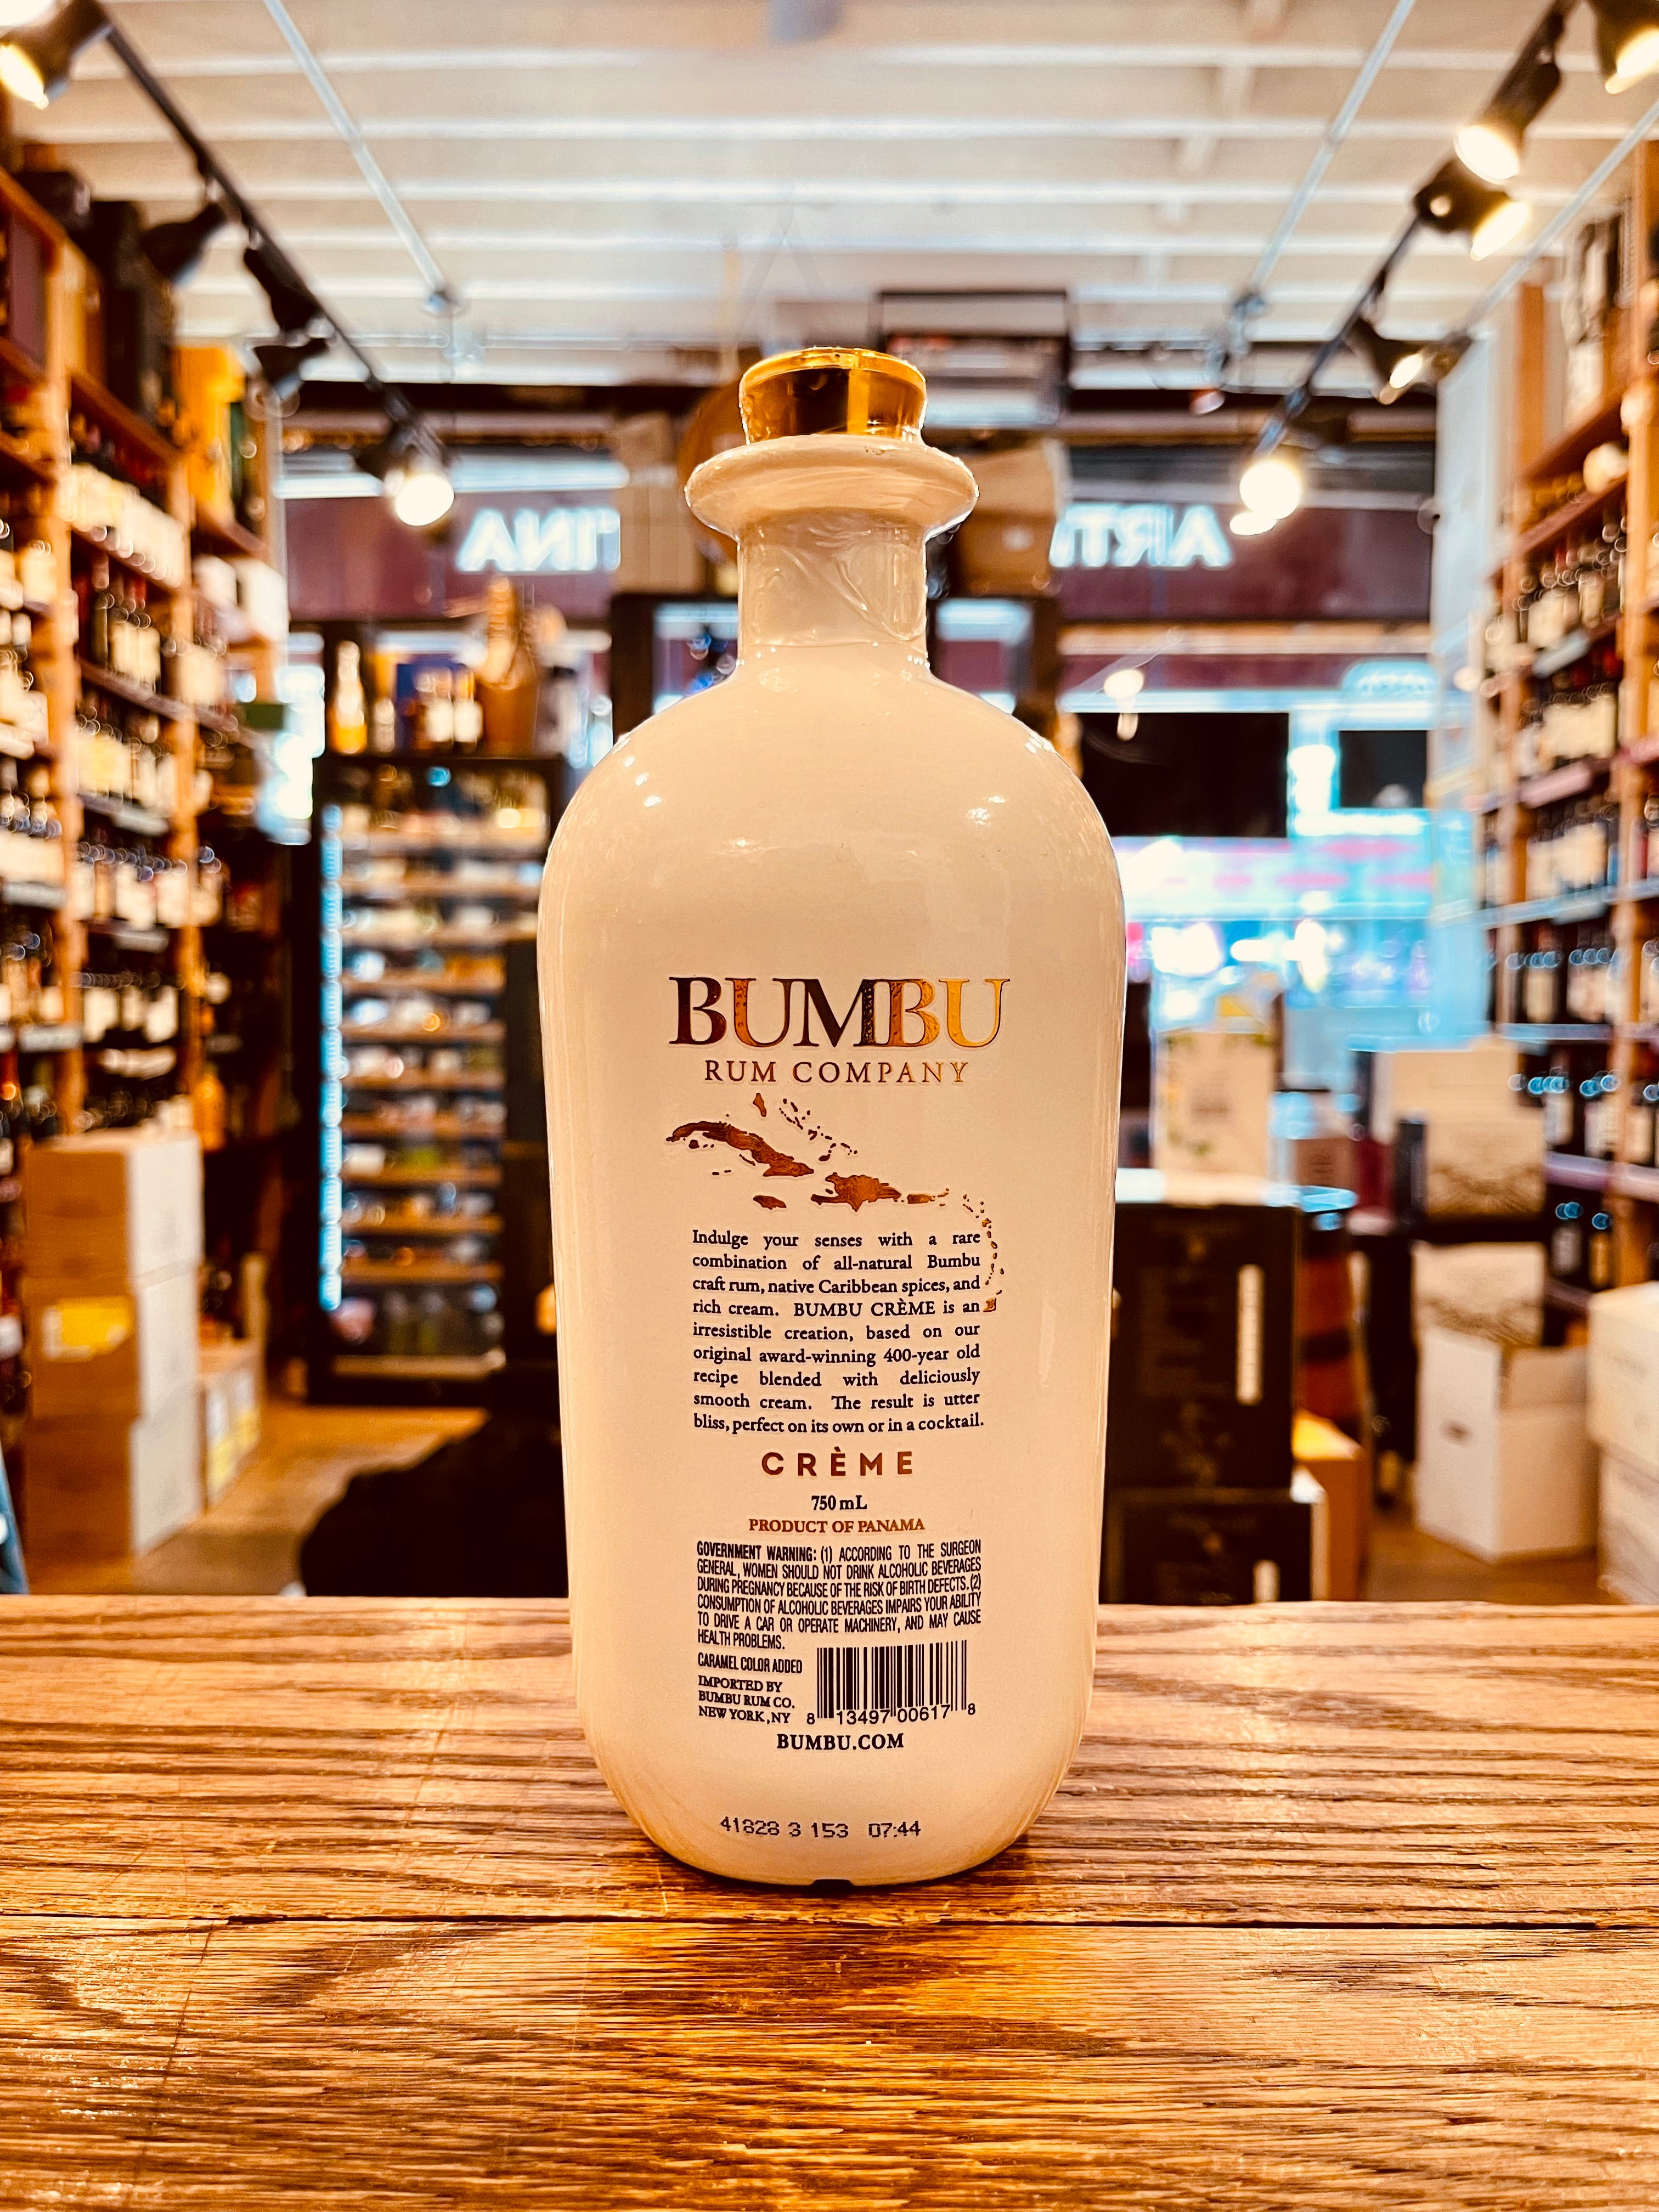 Meet Bumbu Cream!